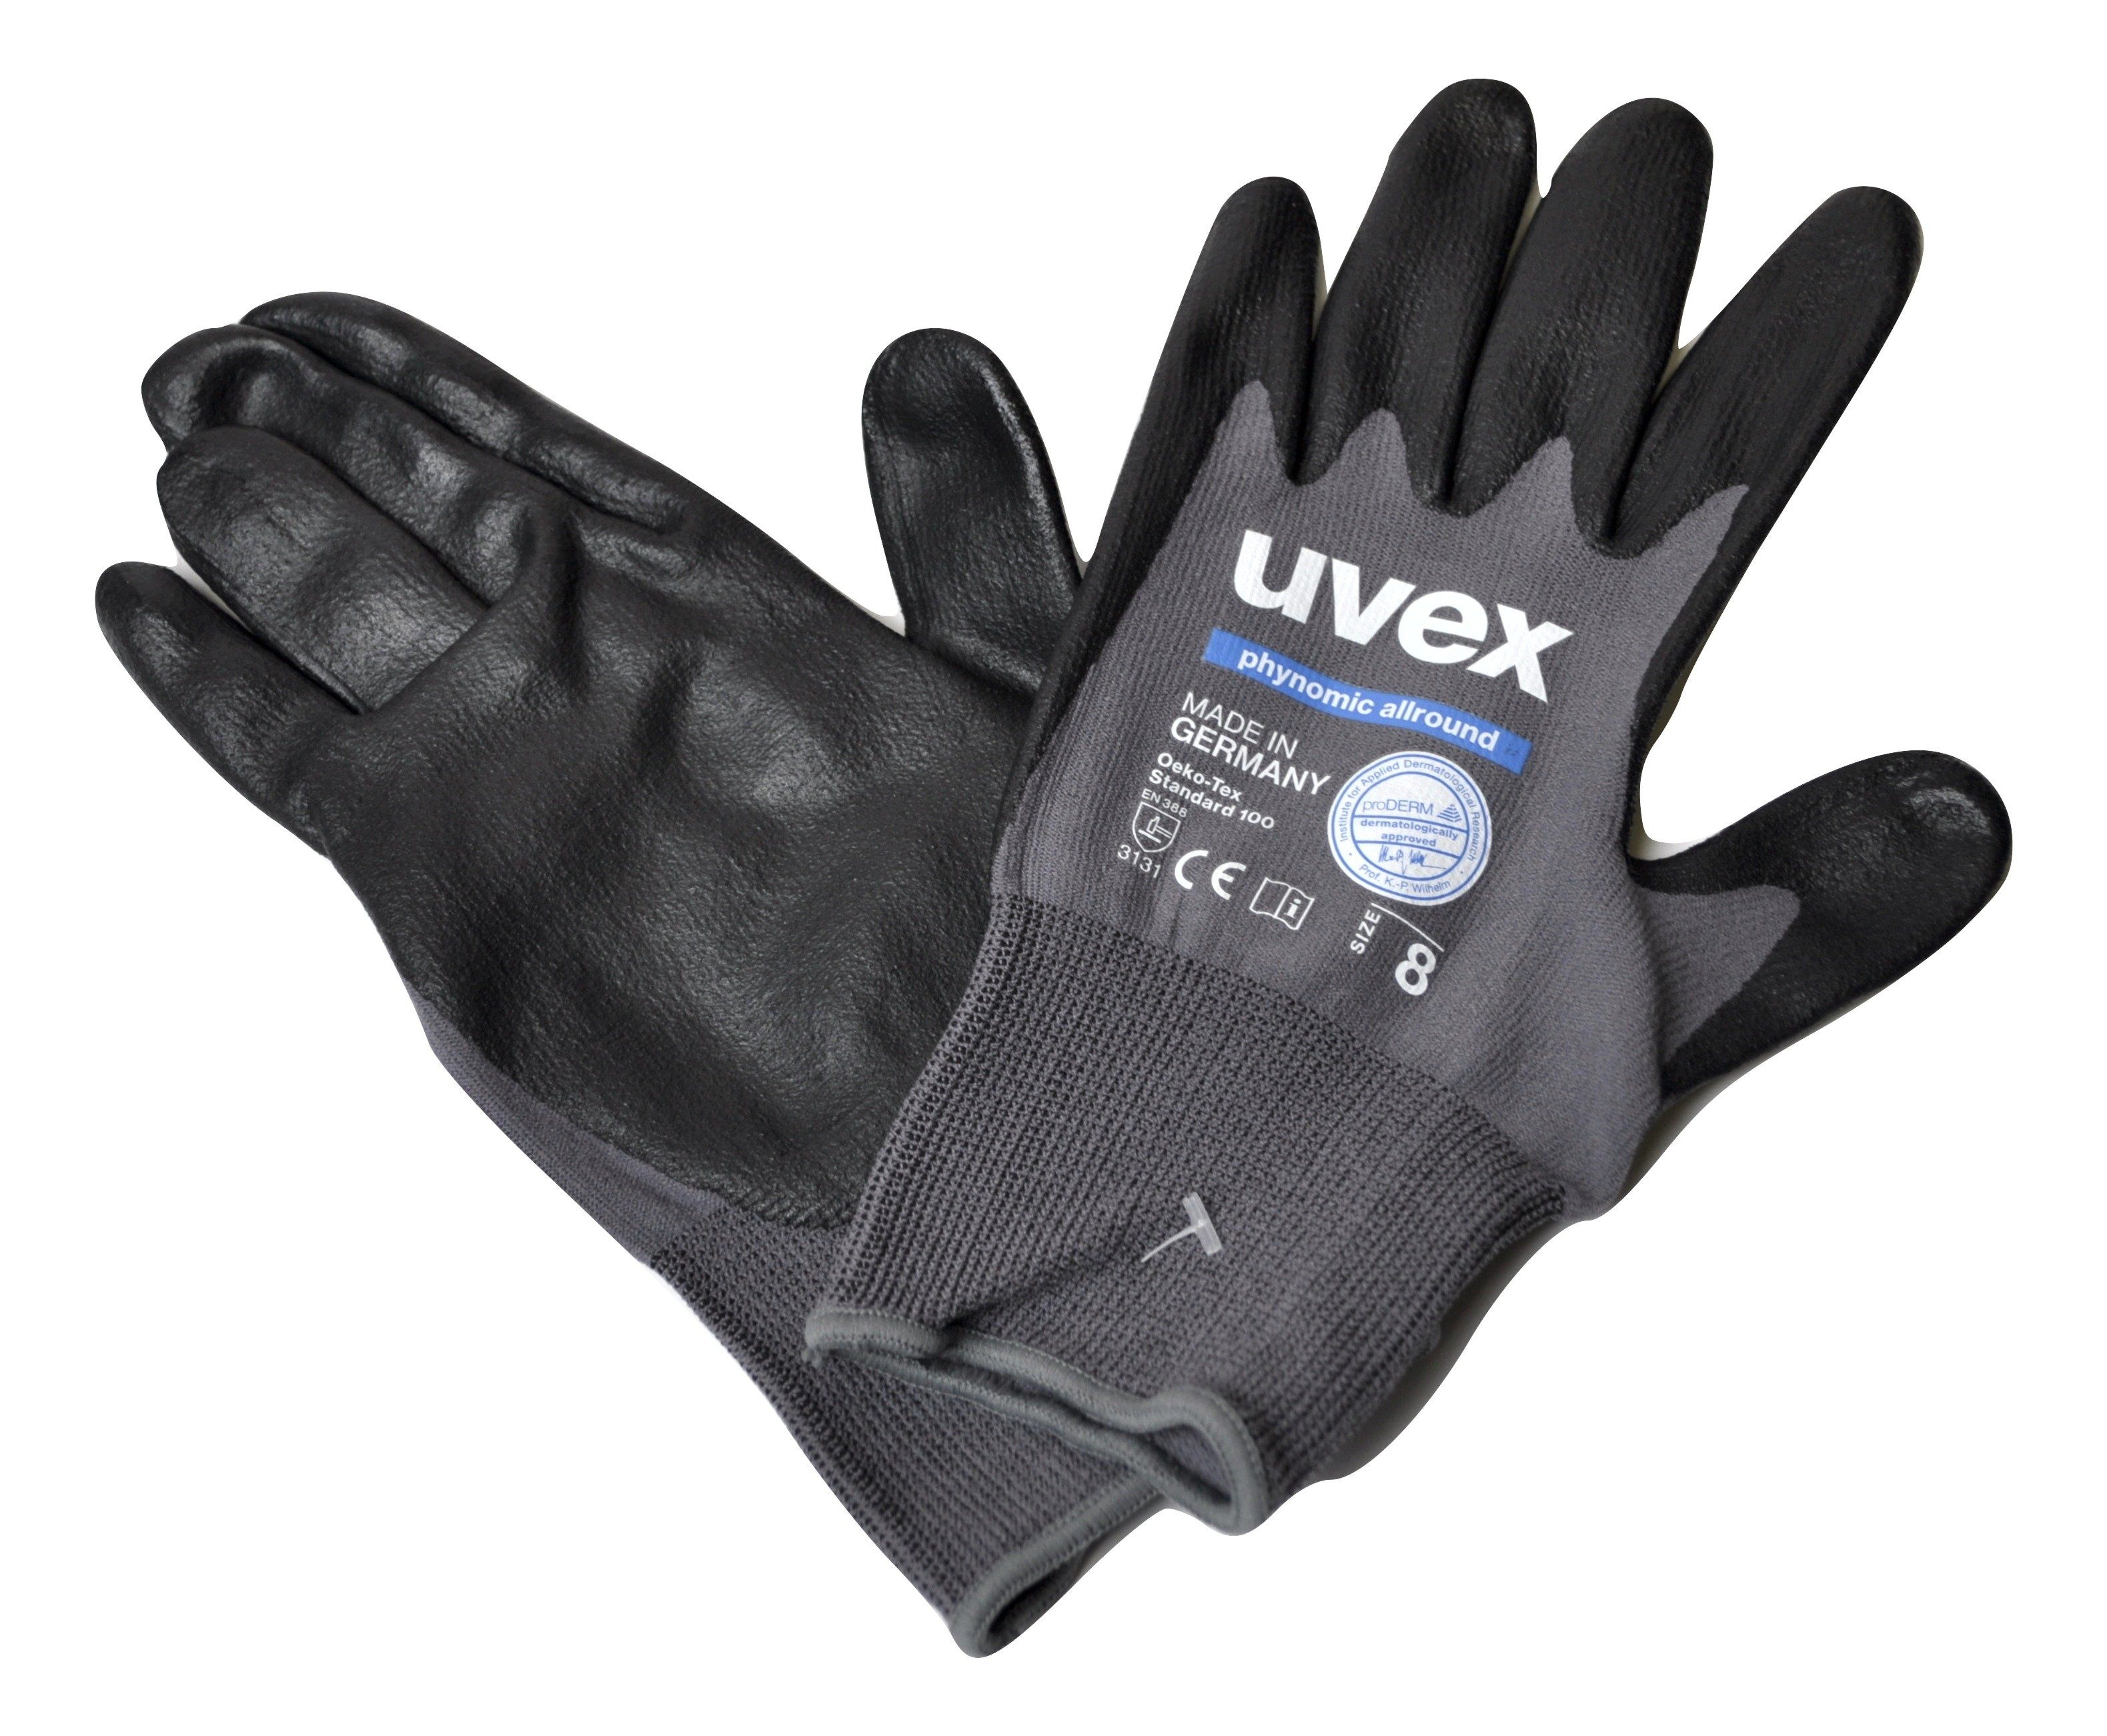 Gr. Uvex Montage-Handschuhe uvex 60049 phynomic allround Schutzhandschuhe